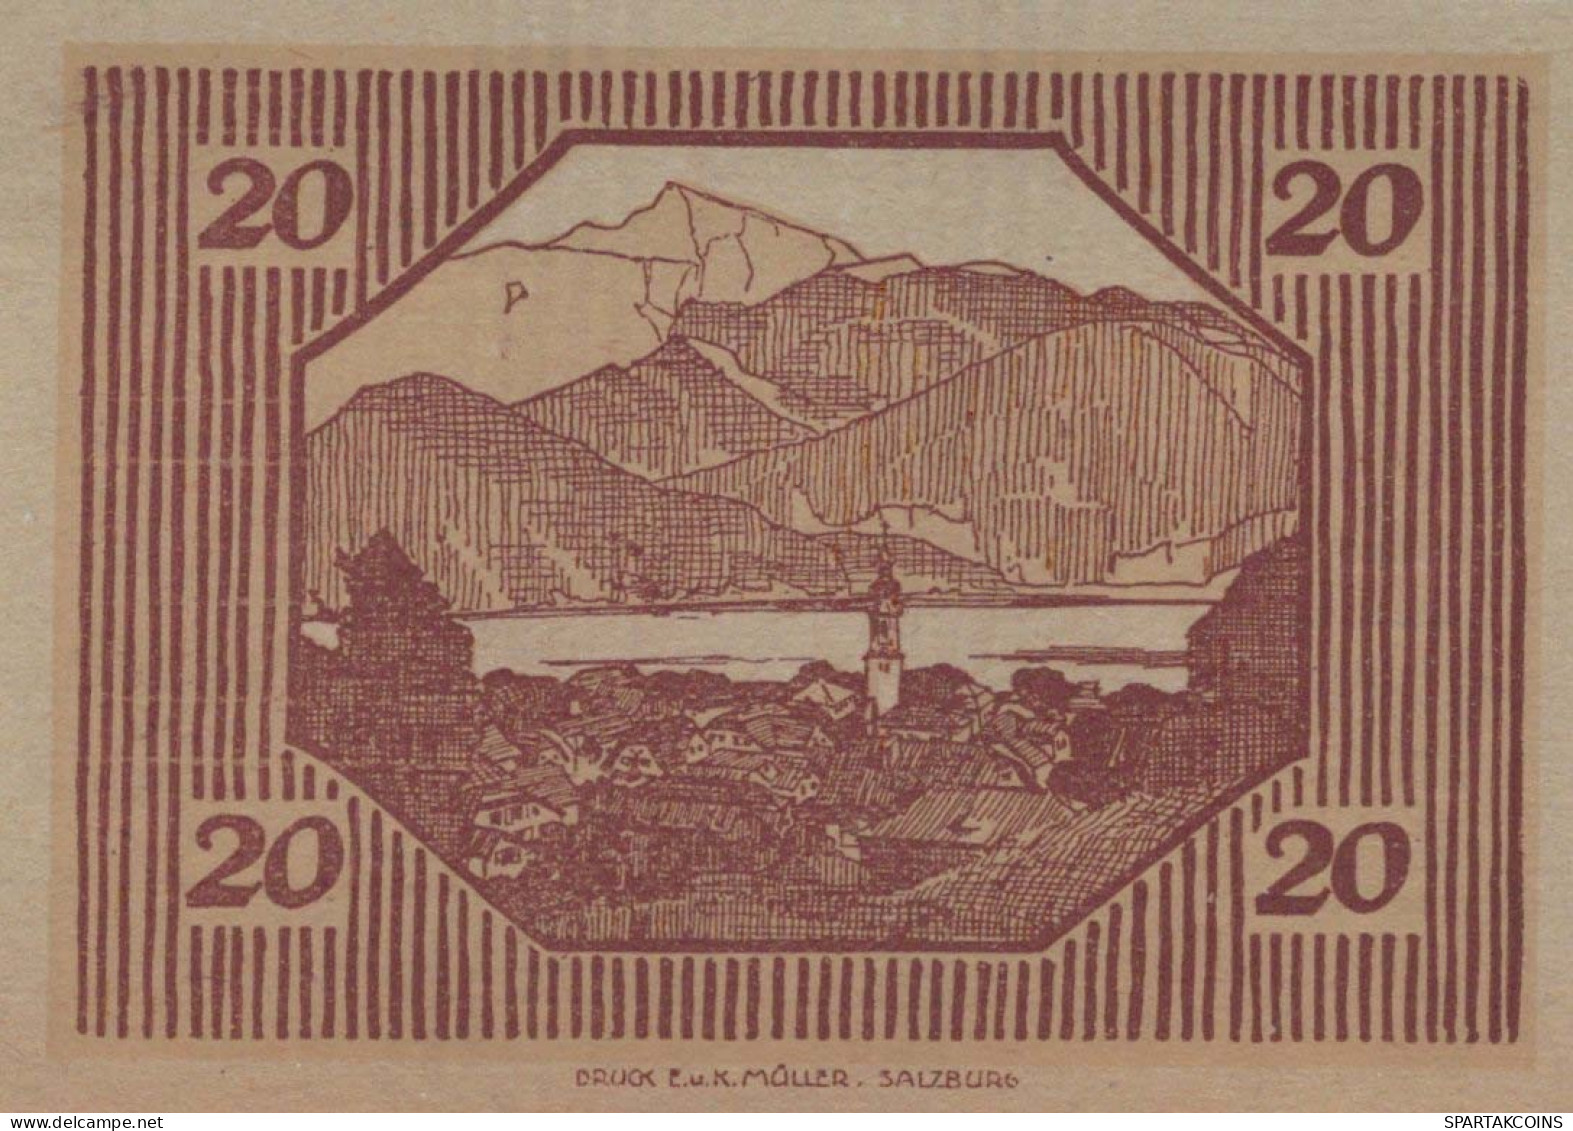 20 HELLER 1920 Stadt SANKT GILGEN Salzburg Österreich Notgeld Banknote #PE611 - Lokale Ausgaben